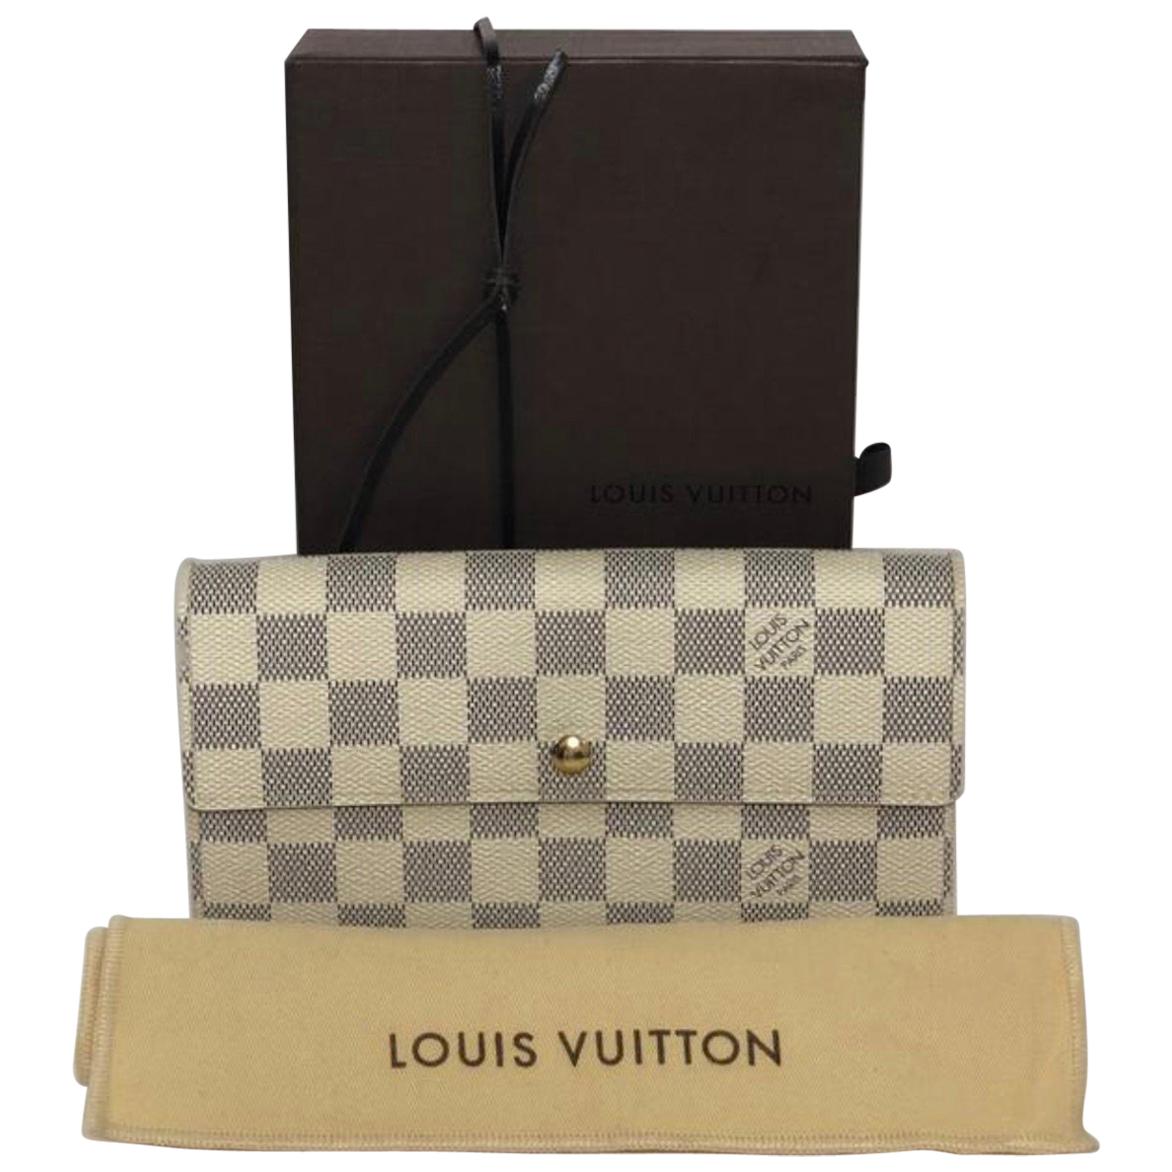  Louis Vuitton Damier Azur Sarah Wallet For Sale